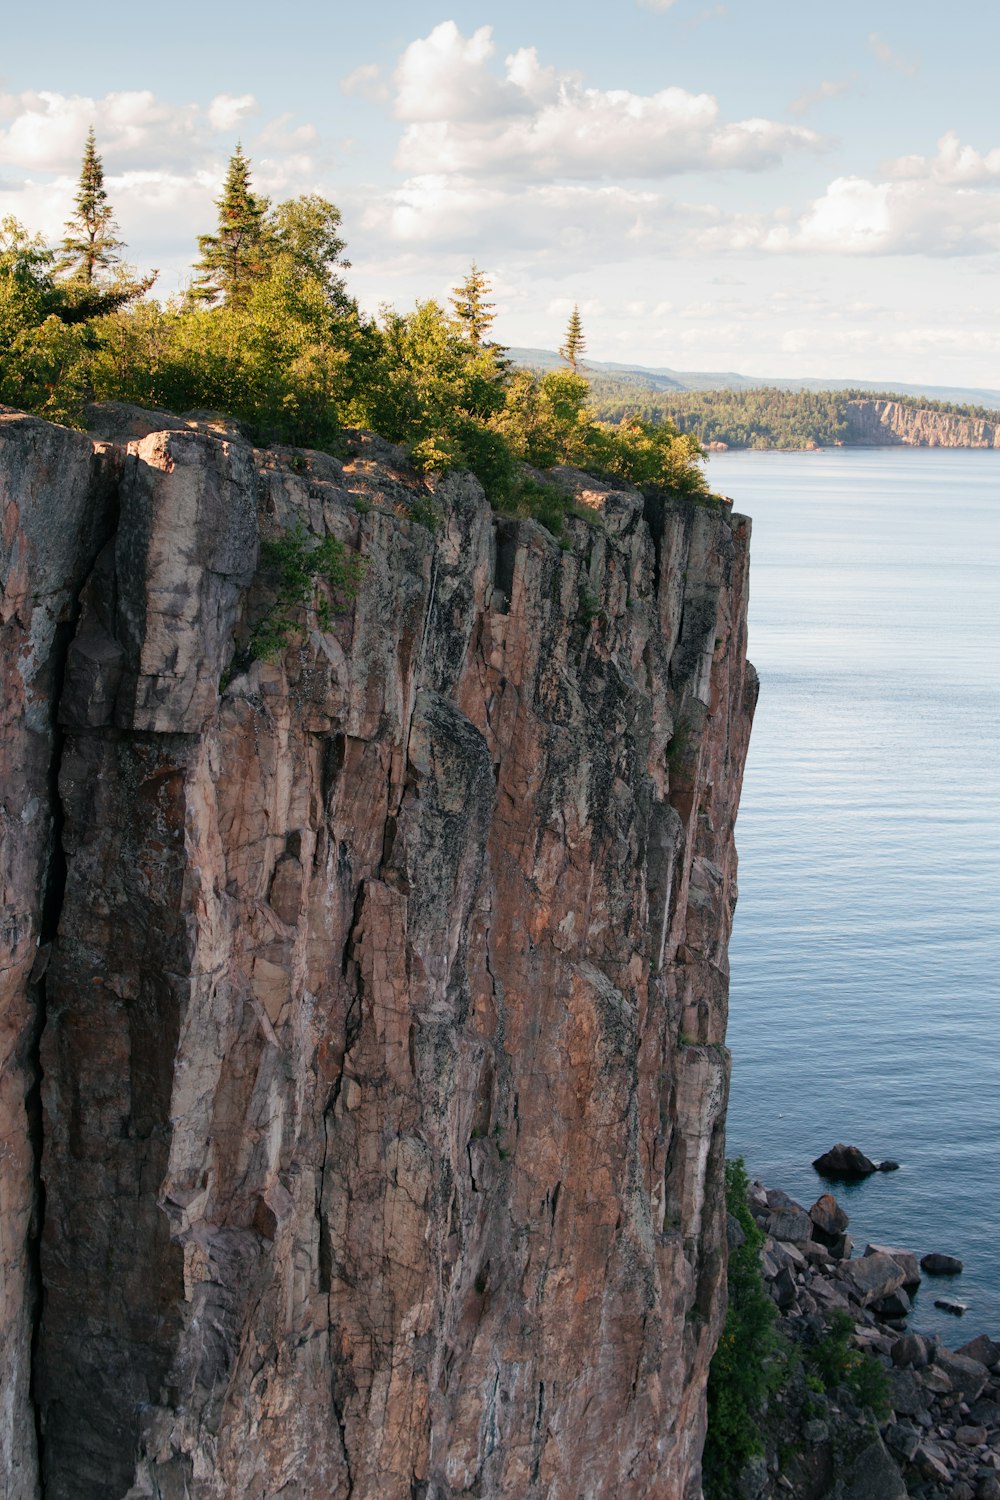 Person, die tagsüber auf einer Felsformation in der Nähe von Gewässern sitzt